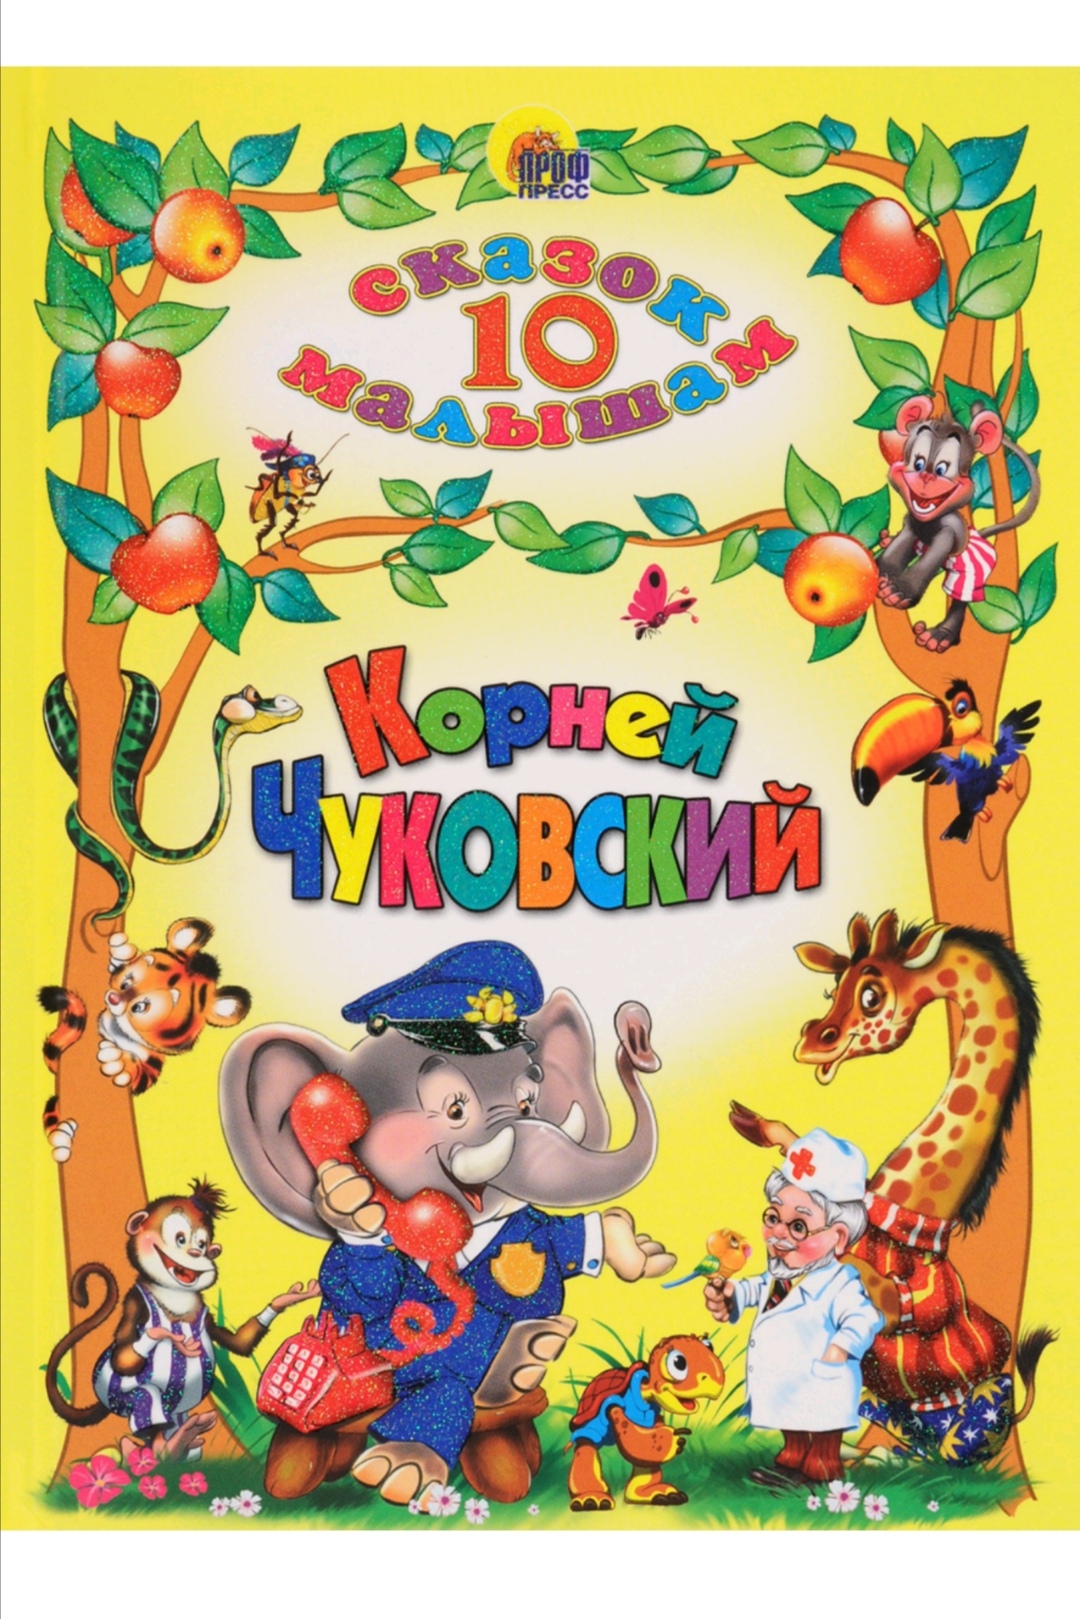 10 сказок малышам. К.И.Чуковский